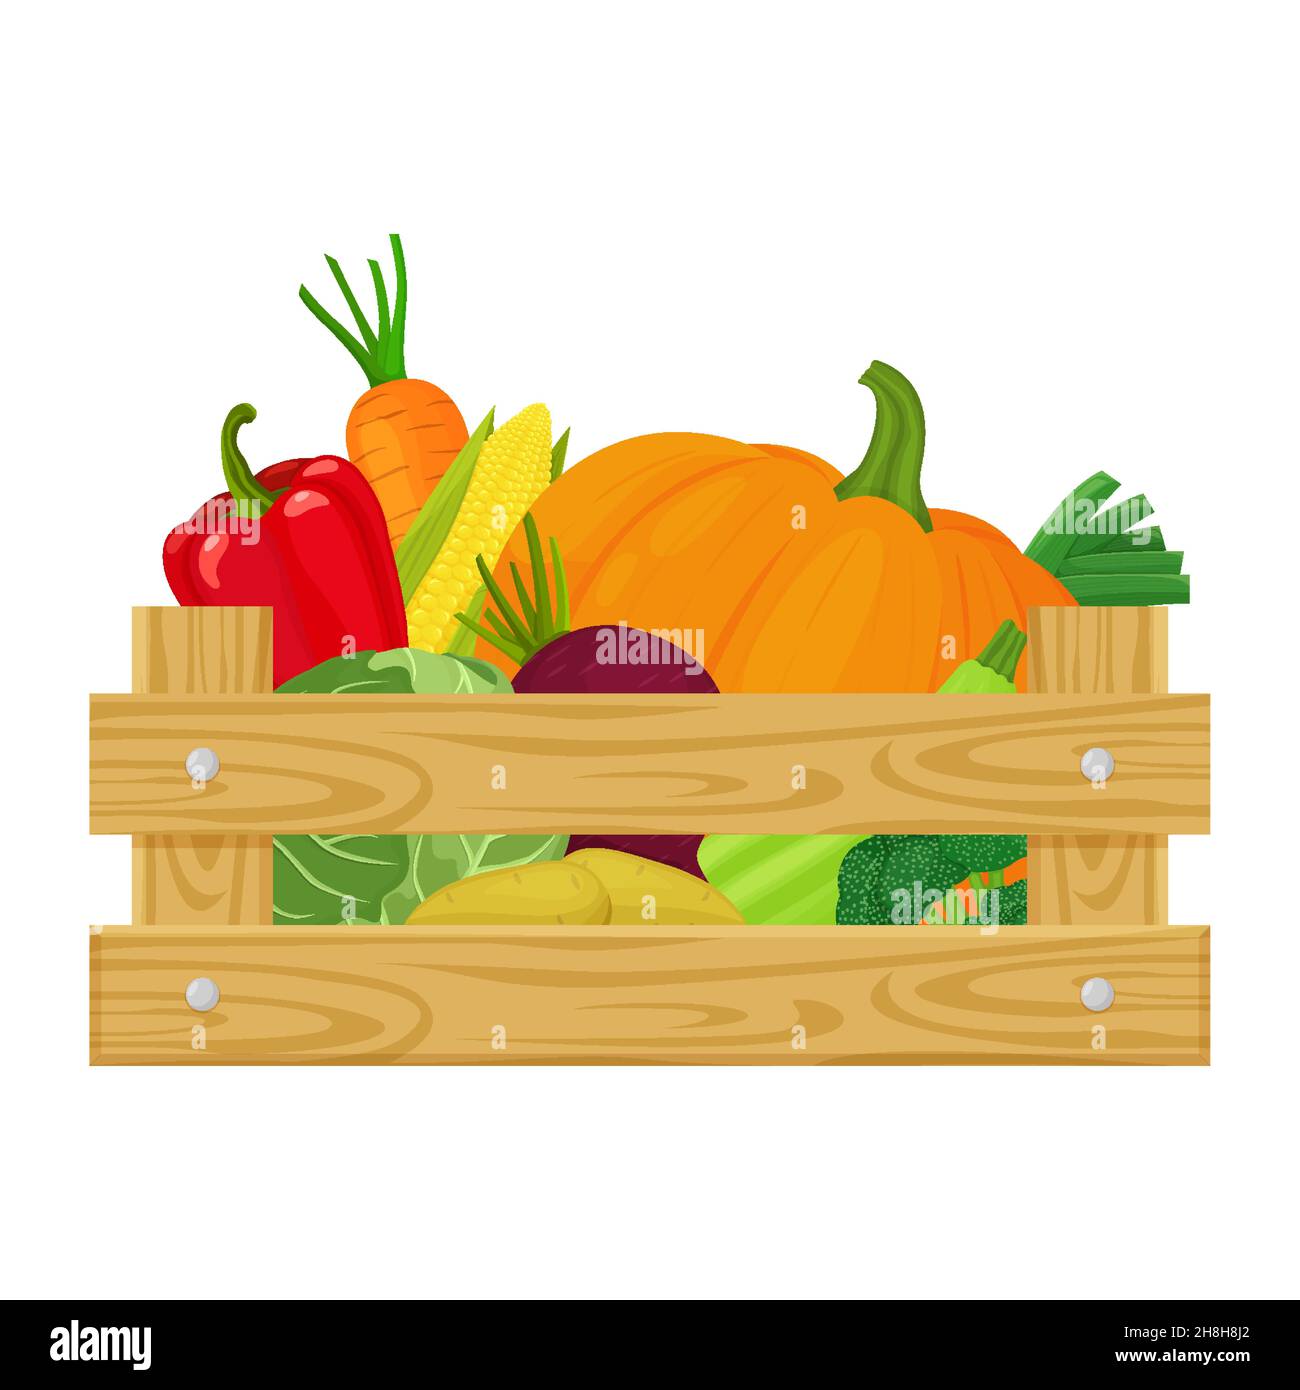 Holzkiste mit verschiedenen frischen Gemüse, isoliert auf weißem Hintergrund. Vektor-Illustration von Bio-Bauernhof Lebensmittel Cartoon flachen Stil. Stock Vektor